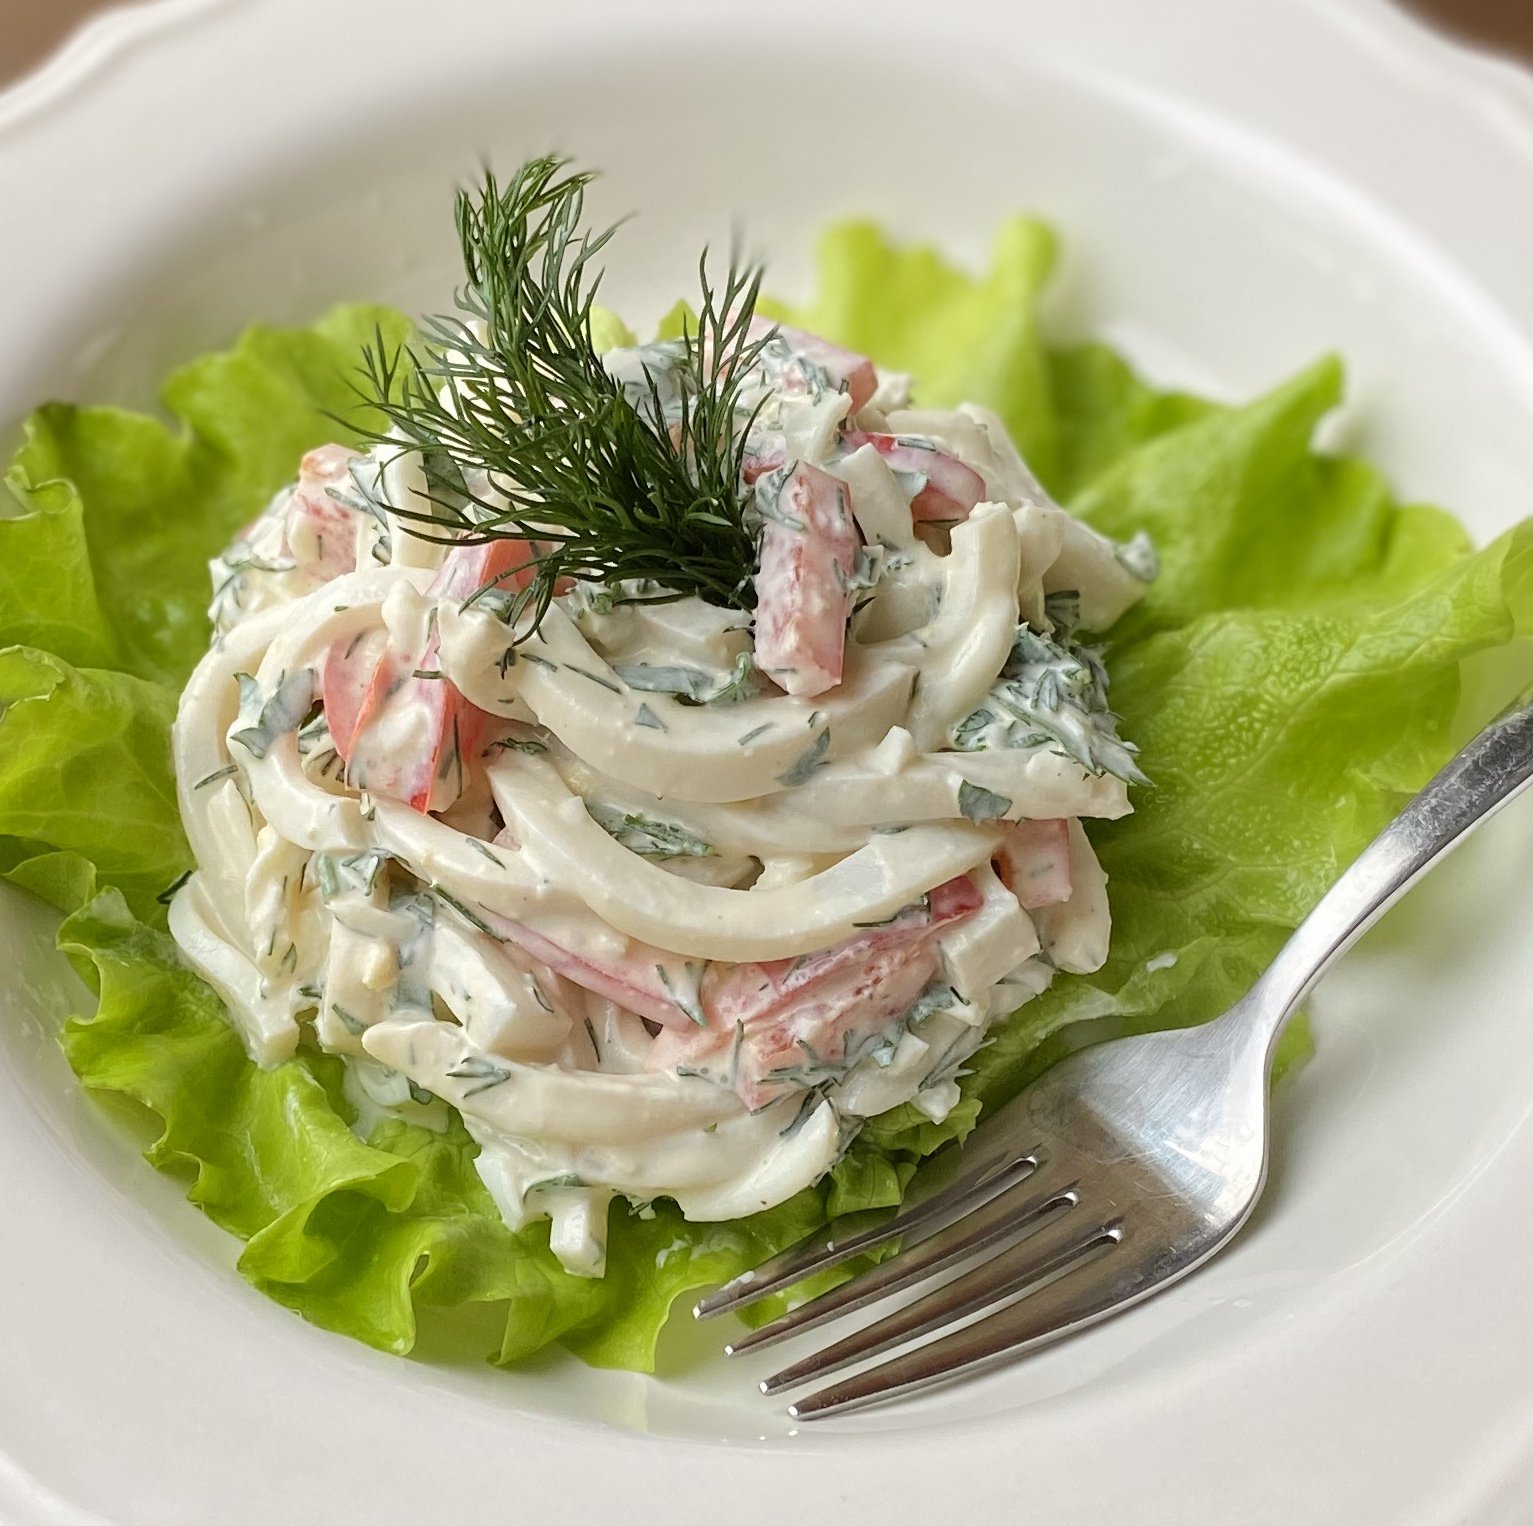 Самый простой рецепт салата из кальмаров. Салат из кальмаров. Салат с кальмарами без майонеза. Салат с кальмарами самый вкусный и простой. Салат с кальмарами самый вкусный на праздничный стол.